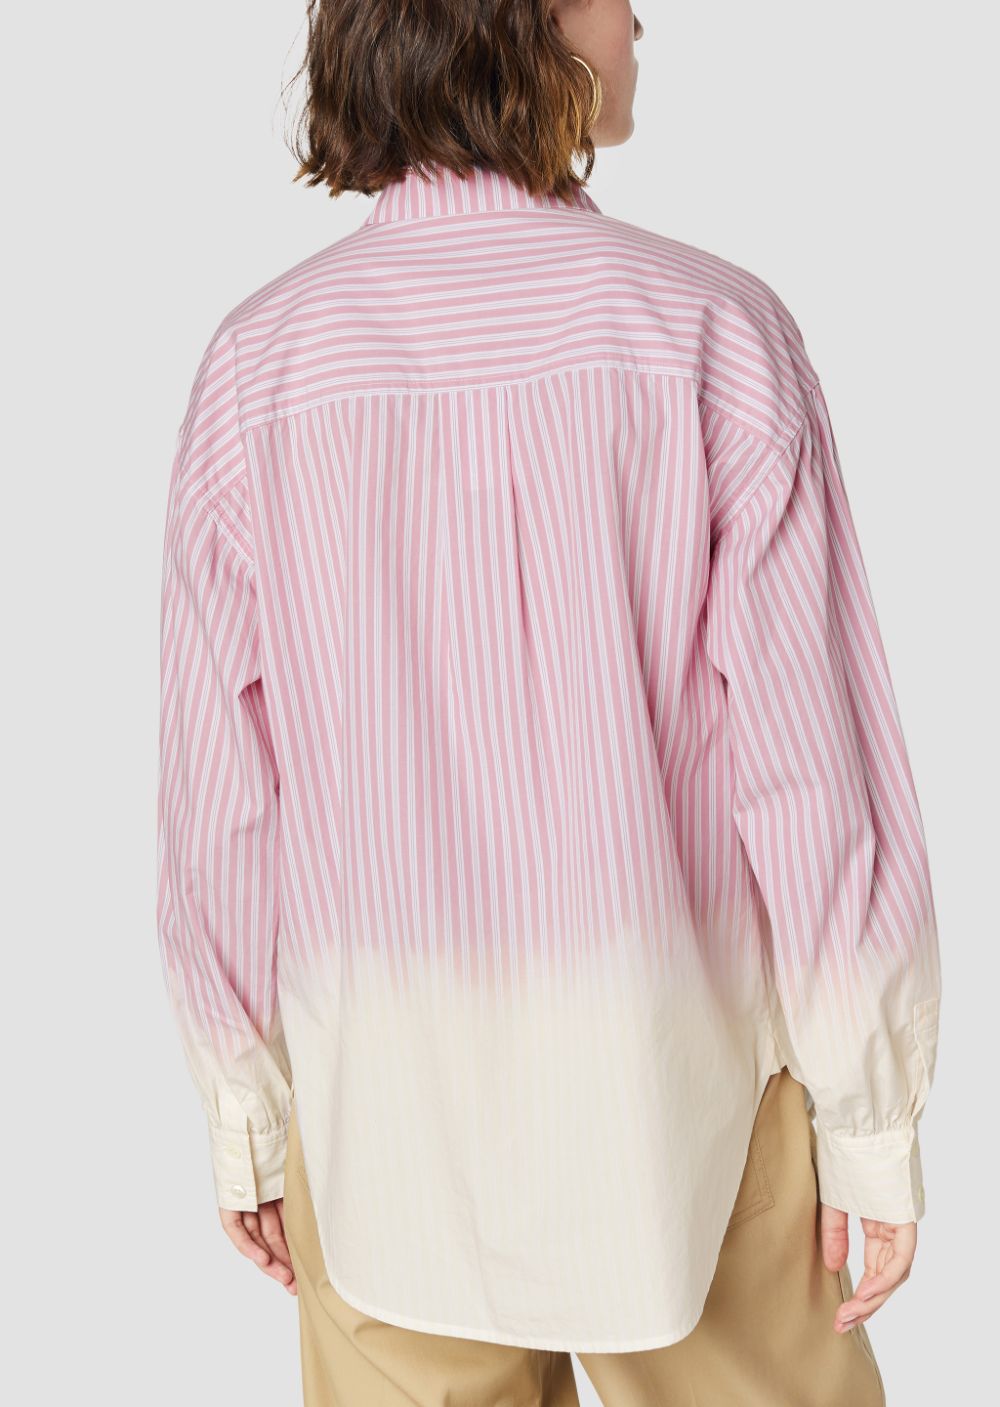 Striped Dip Dye Button Down Shirt